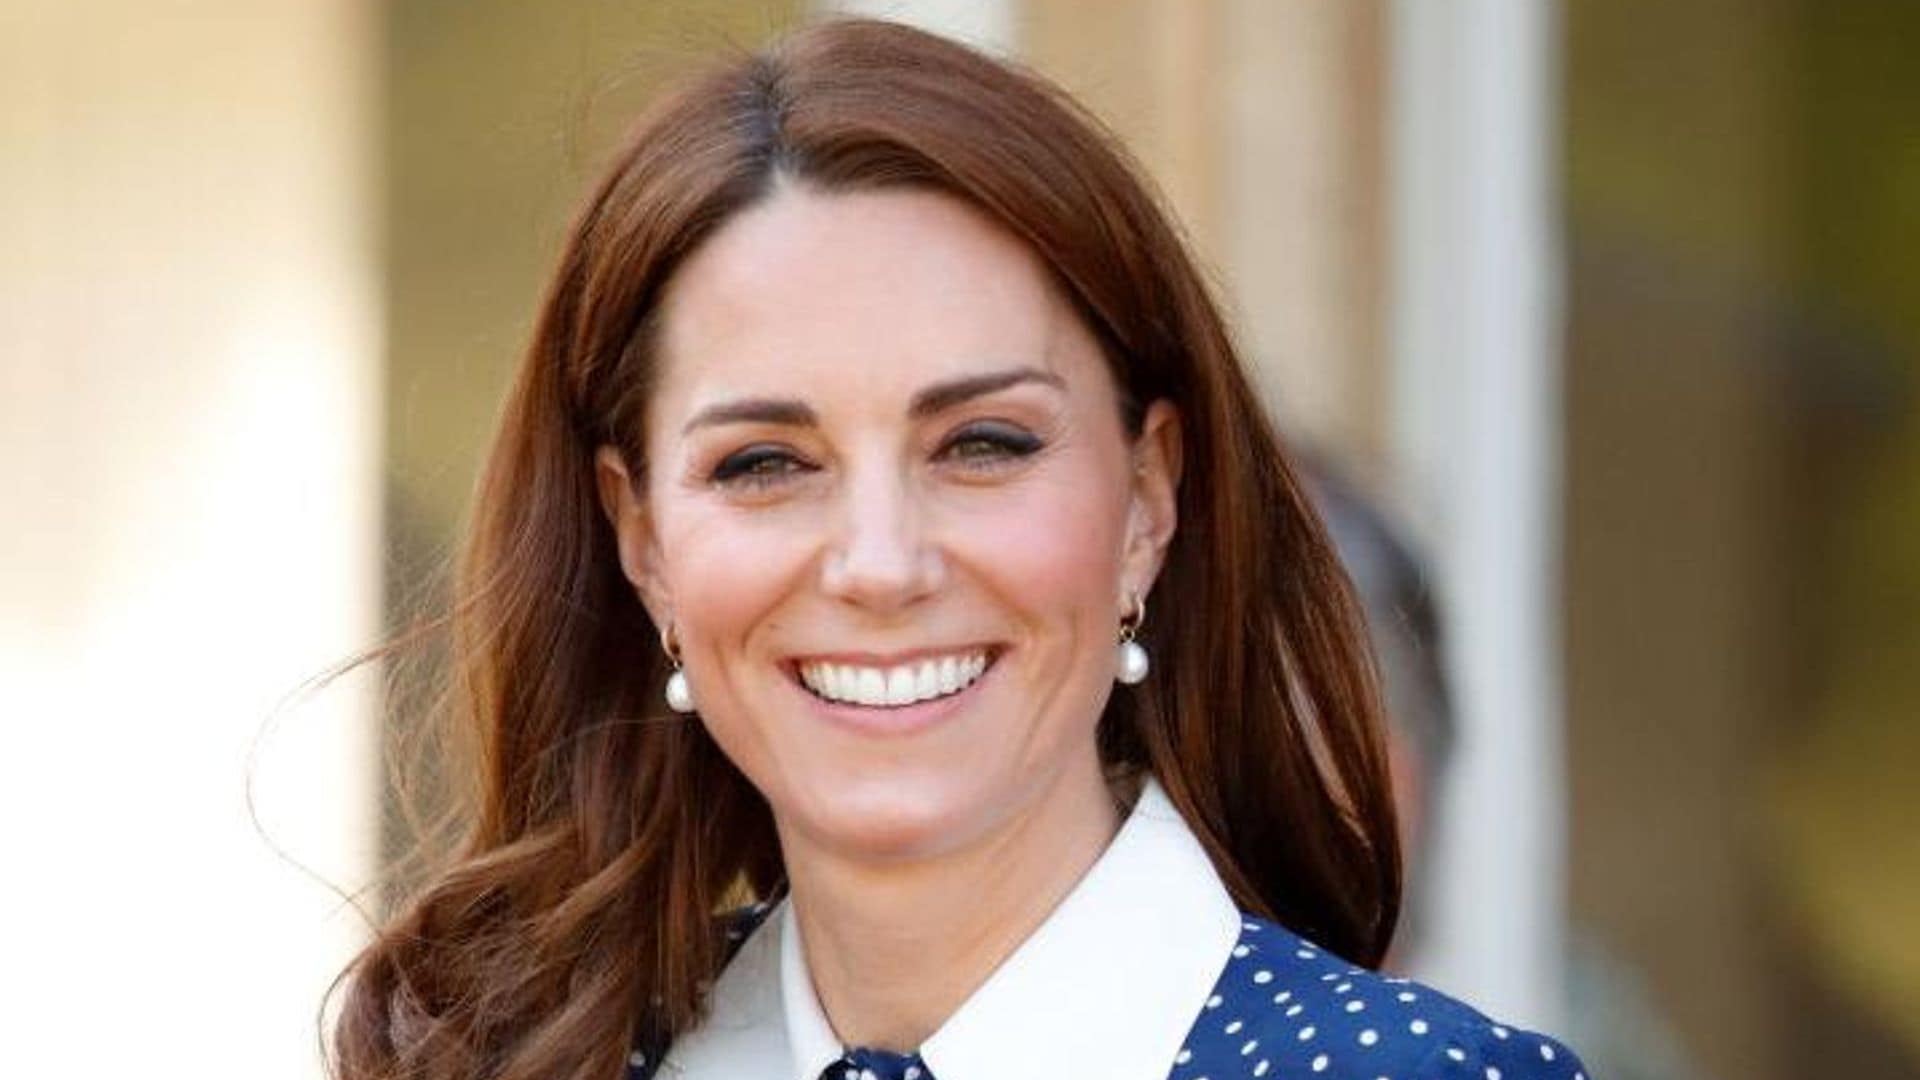 Nueva actualización sobre la salud de Kate Middleton: ‘Está bien, pero no al 100%’